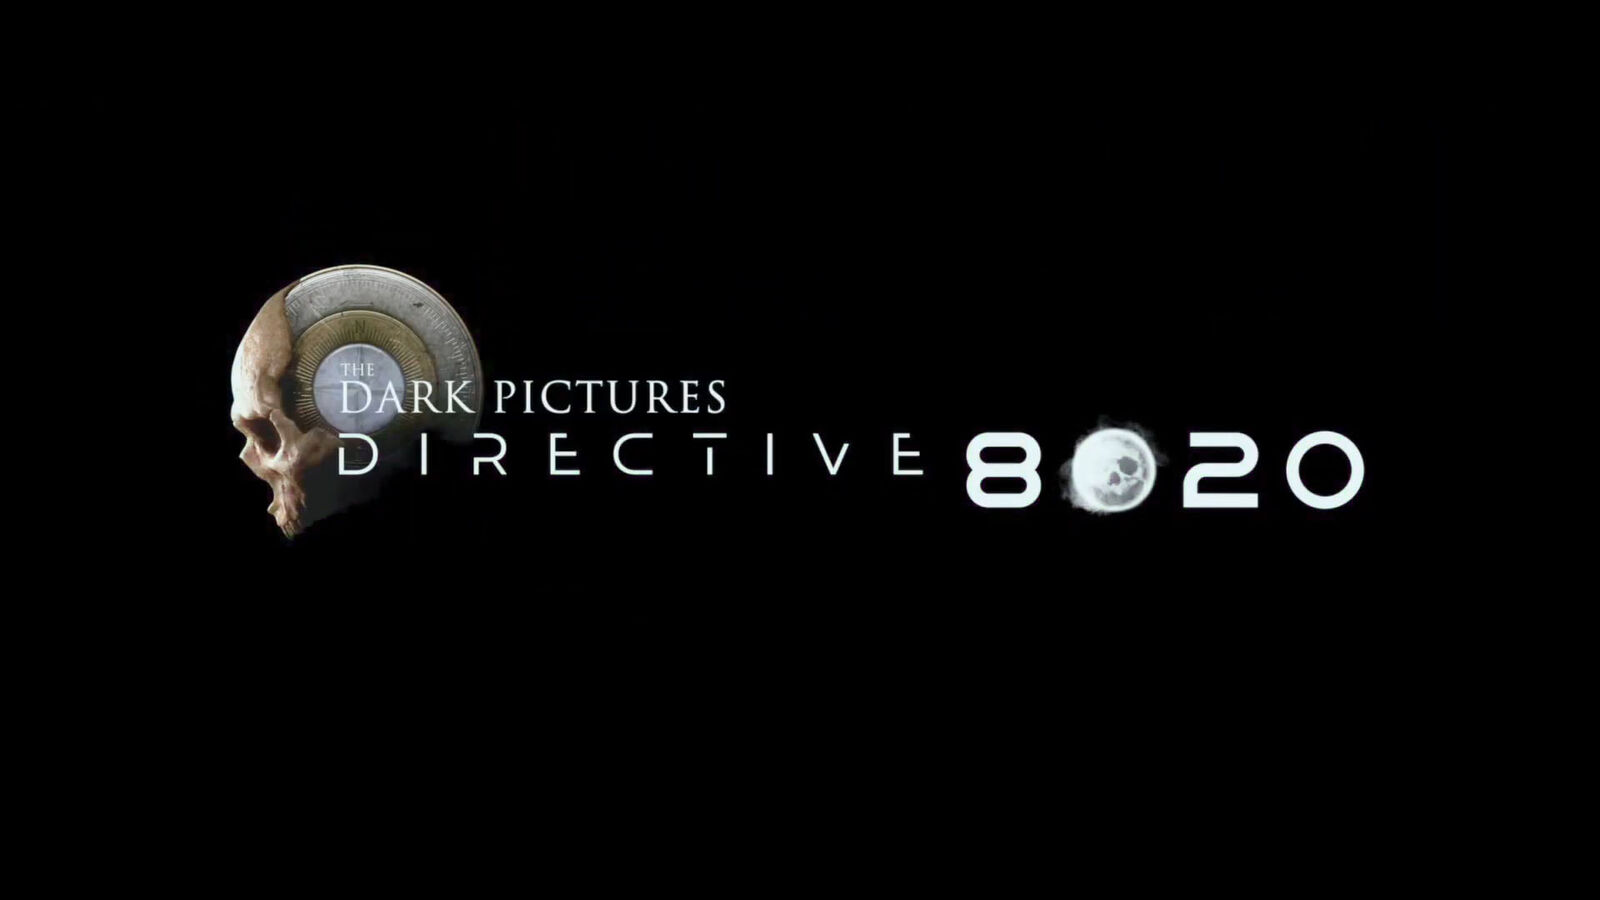 Ein Trailer zum nächsten Spiel von The Dark Pictures Anthology, Direktive 8020, ist durchgesickert